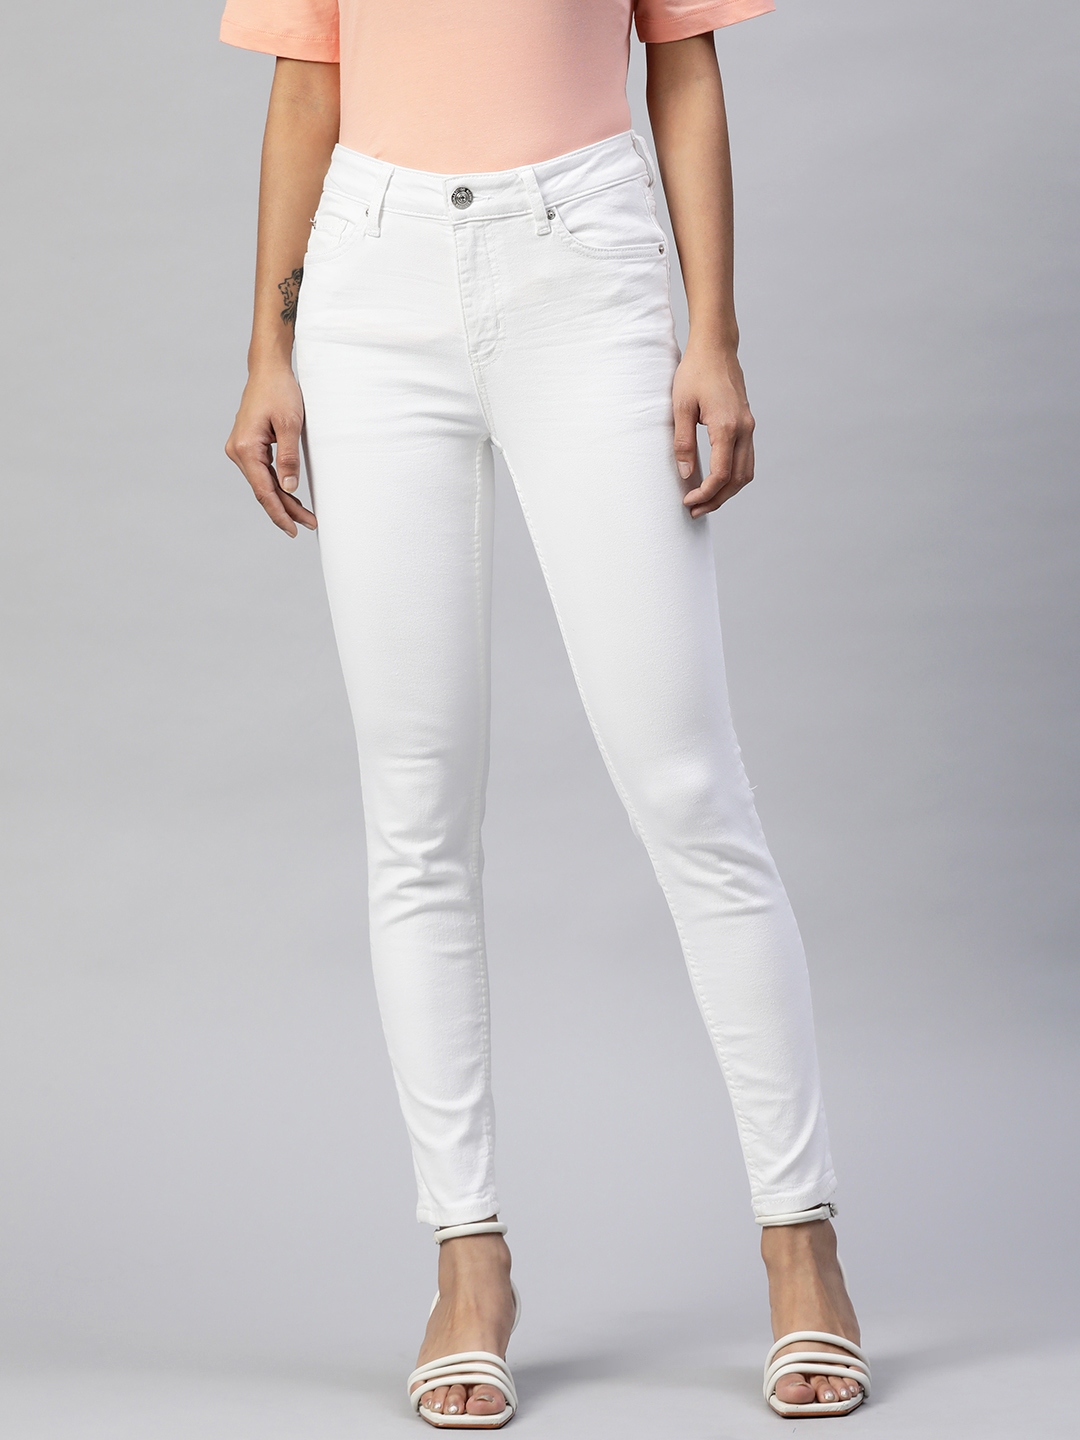 Buy Marks & Spencer Women White Skinny Fit Jeans - Jeans for Women ...